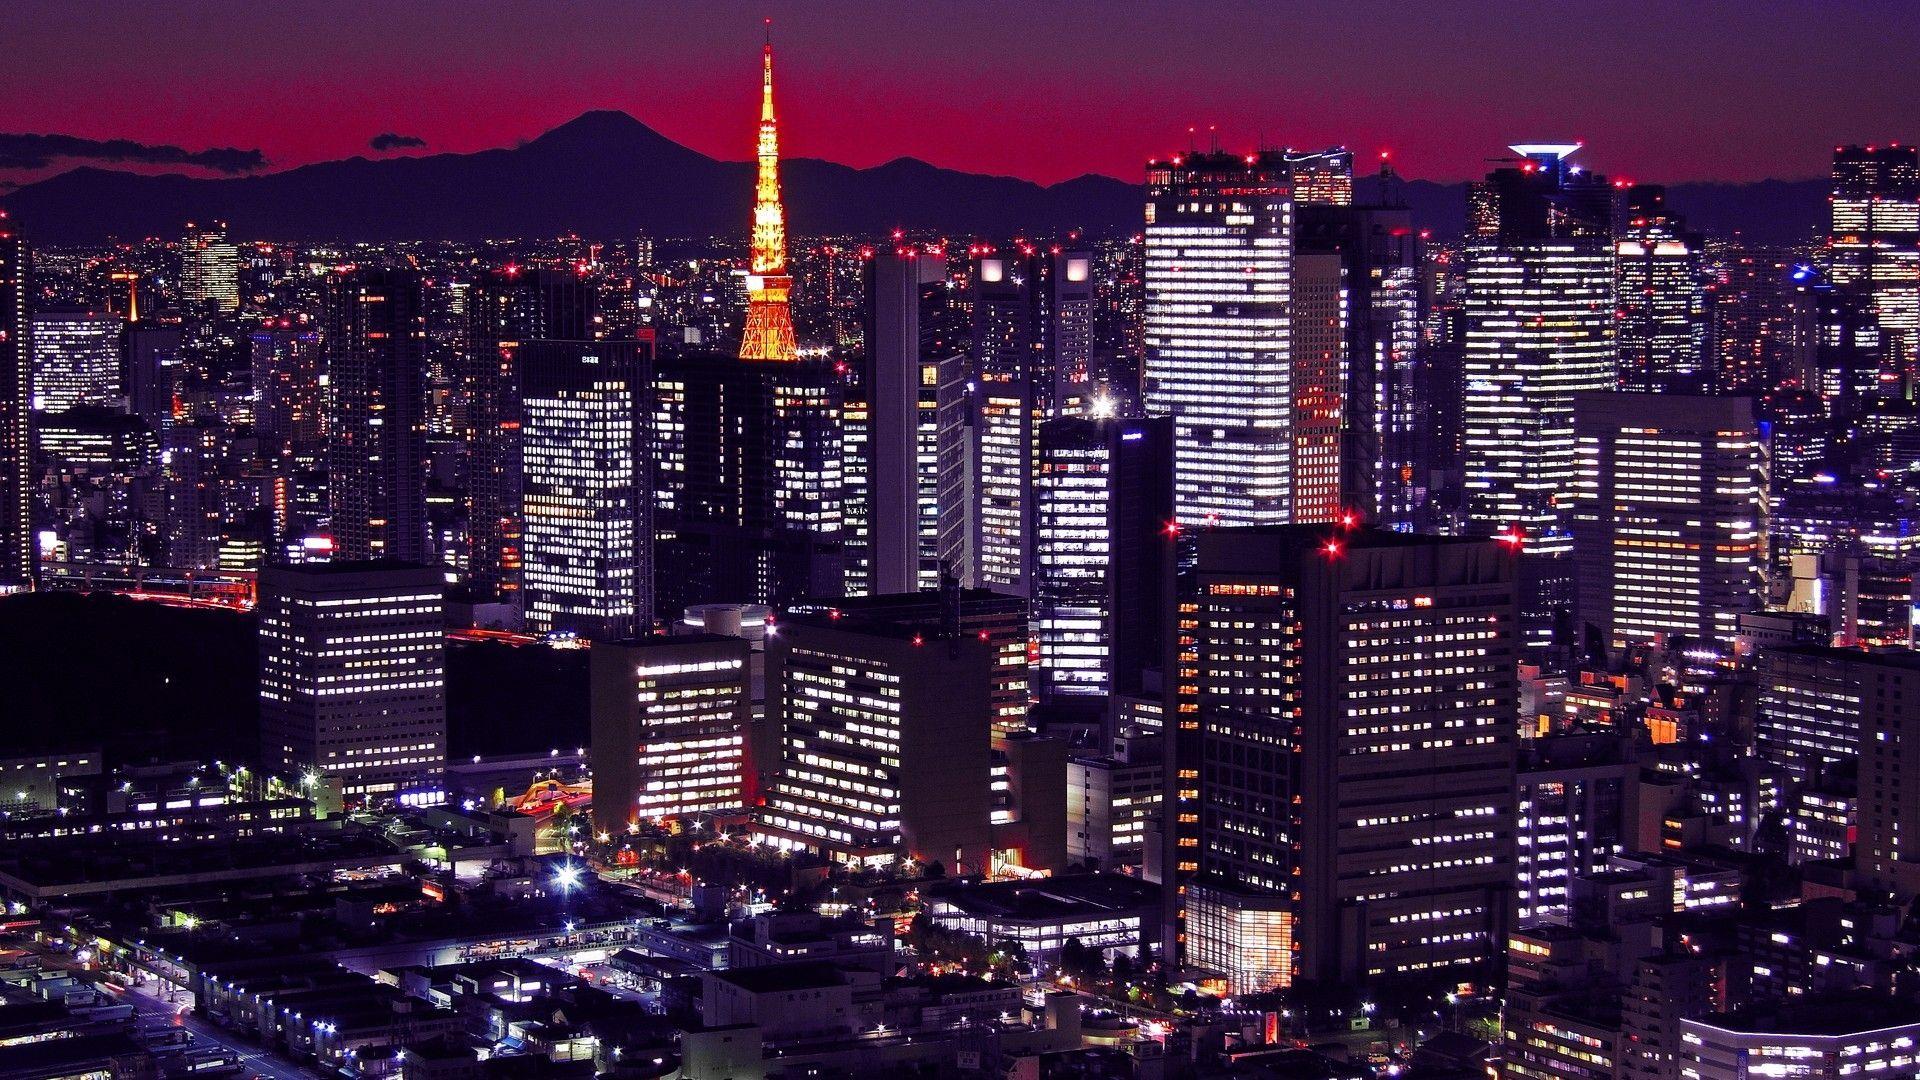 Japan Tokyo at Night Wallpapers - Top Free Japan Tokyo at Night